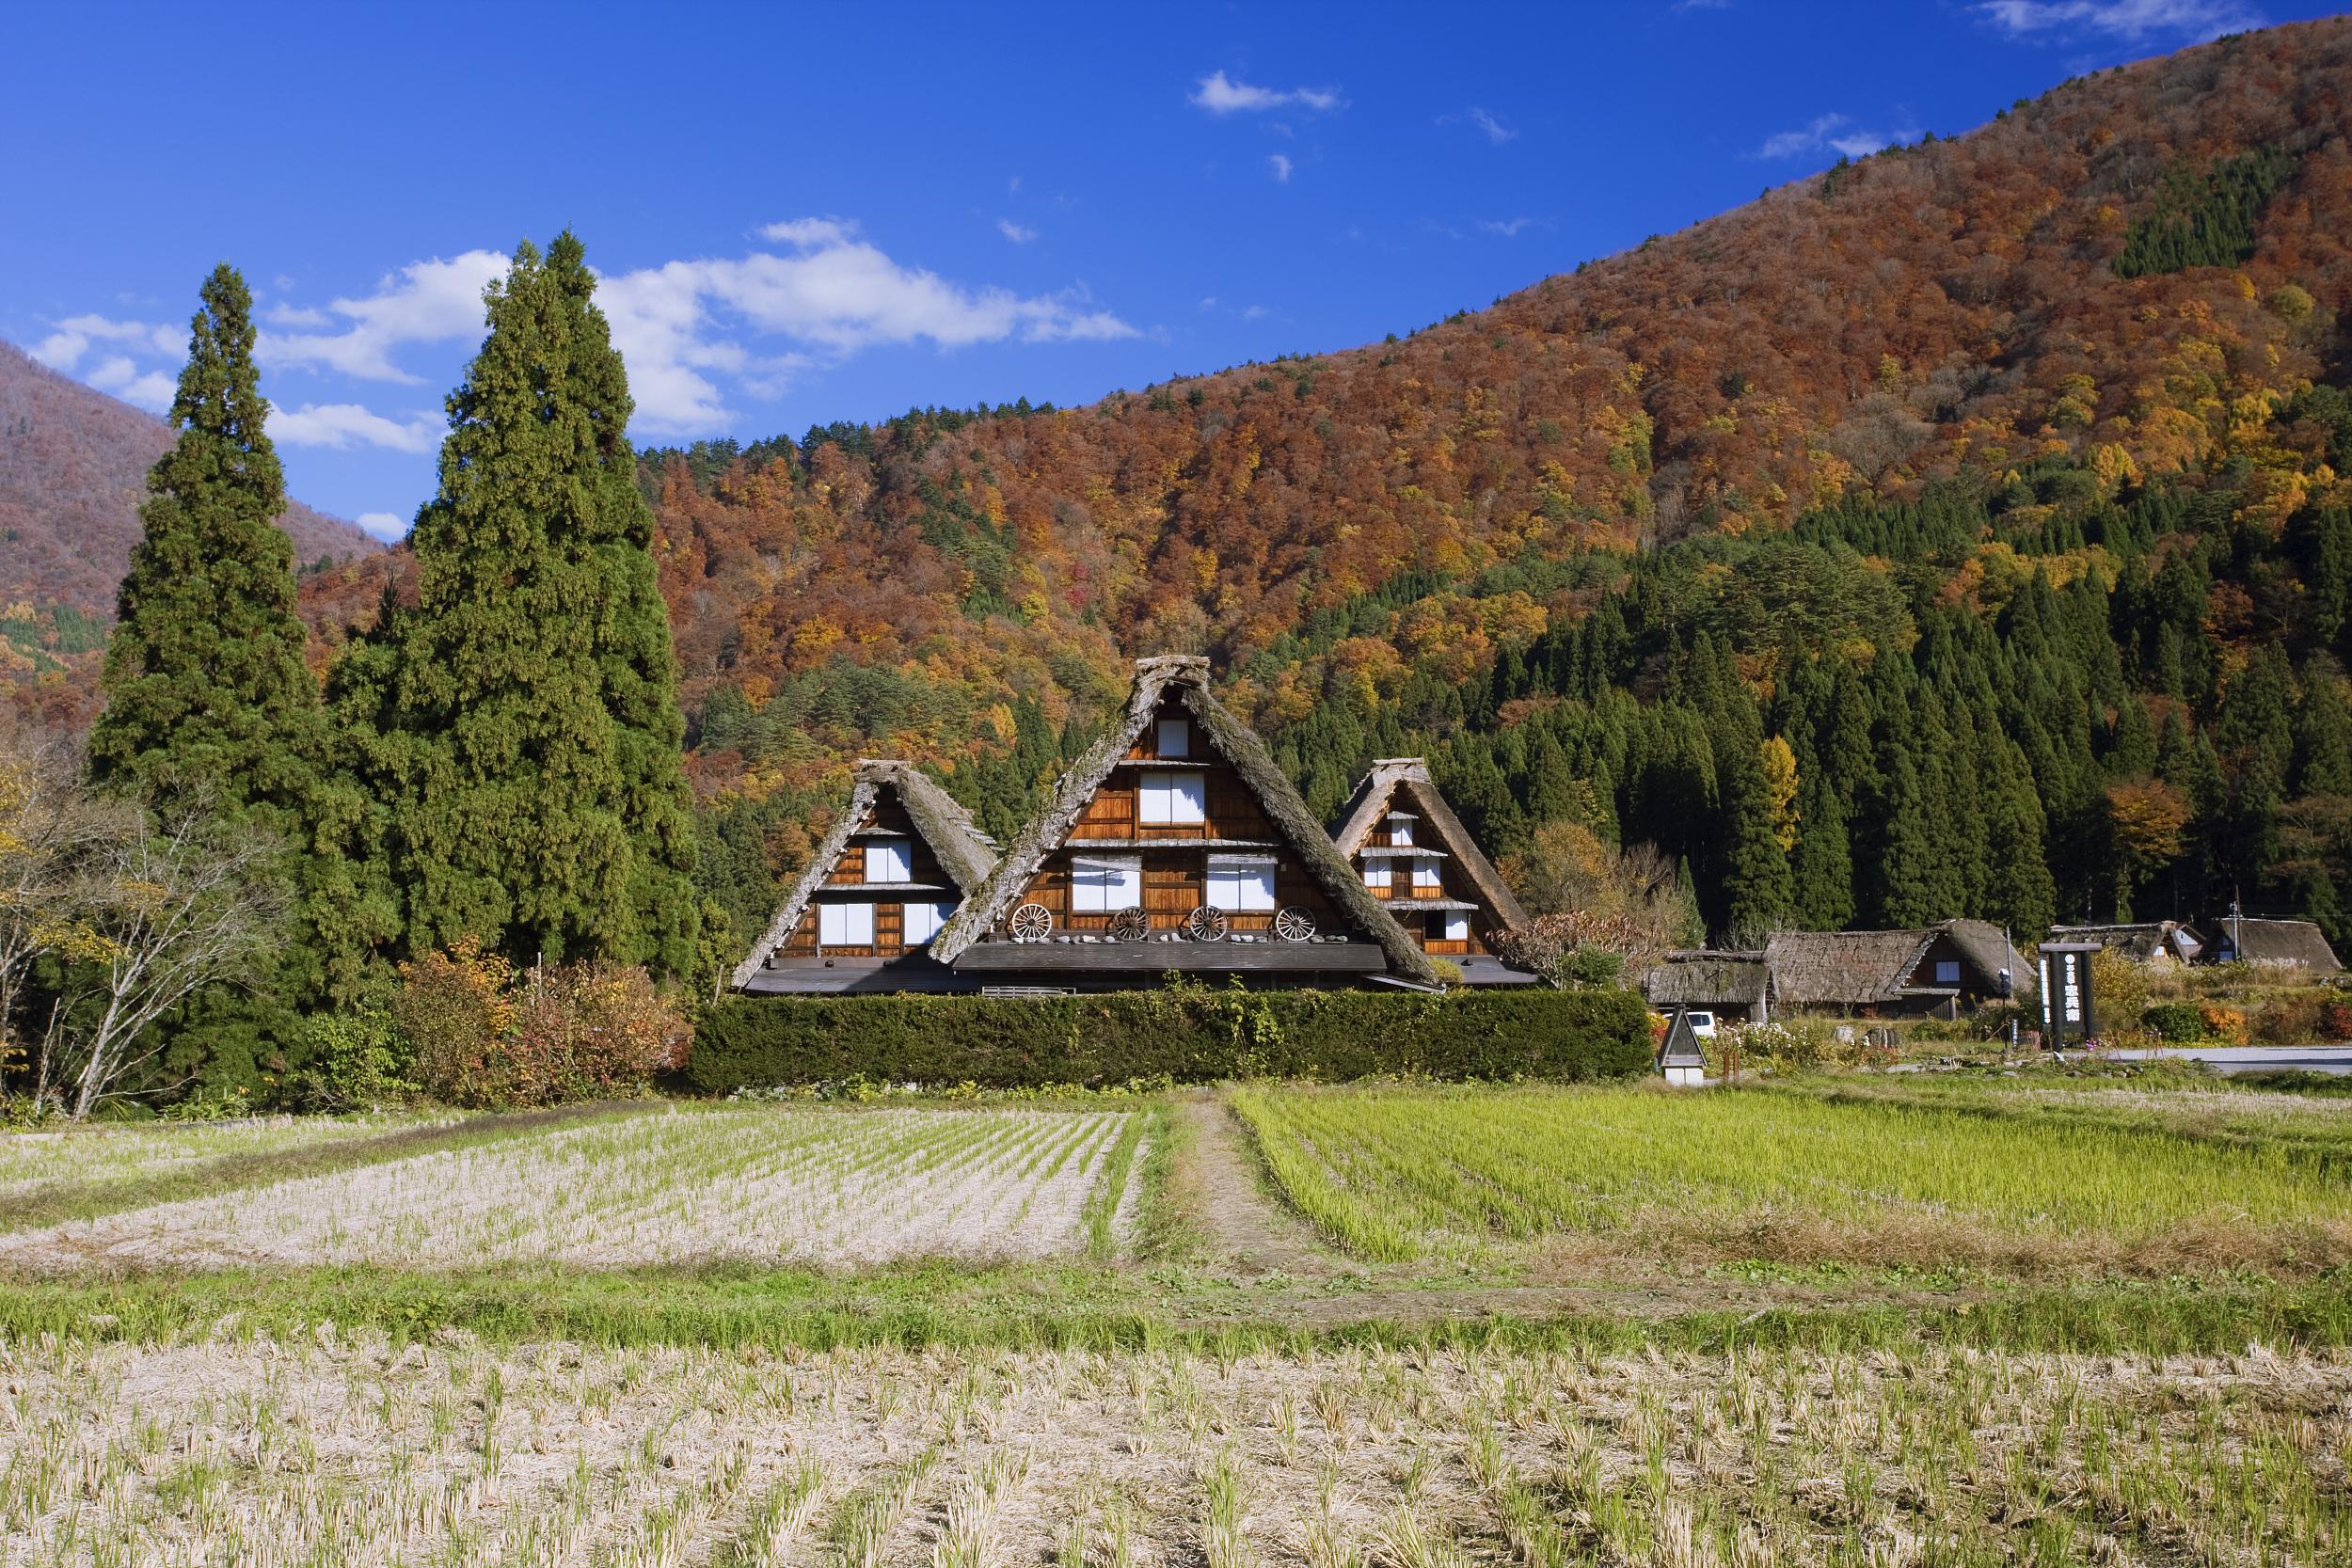 山区中就隐藏着一个被称为日本最美乡村的小山村——白川乡